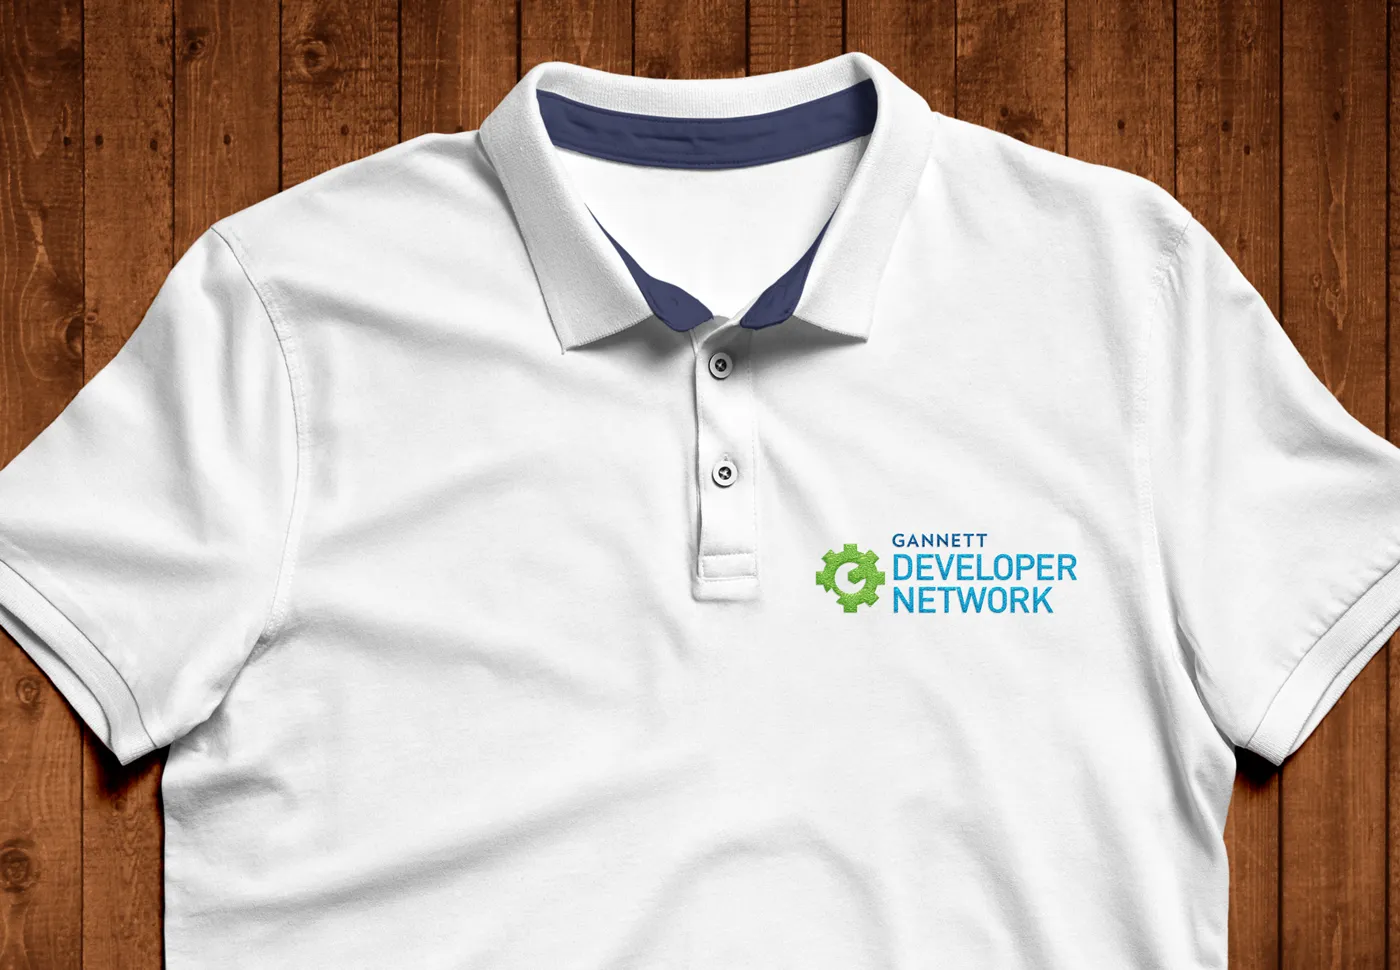 Gannett Developer Network polo shirt design